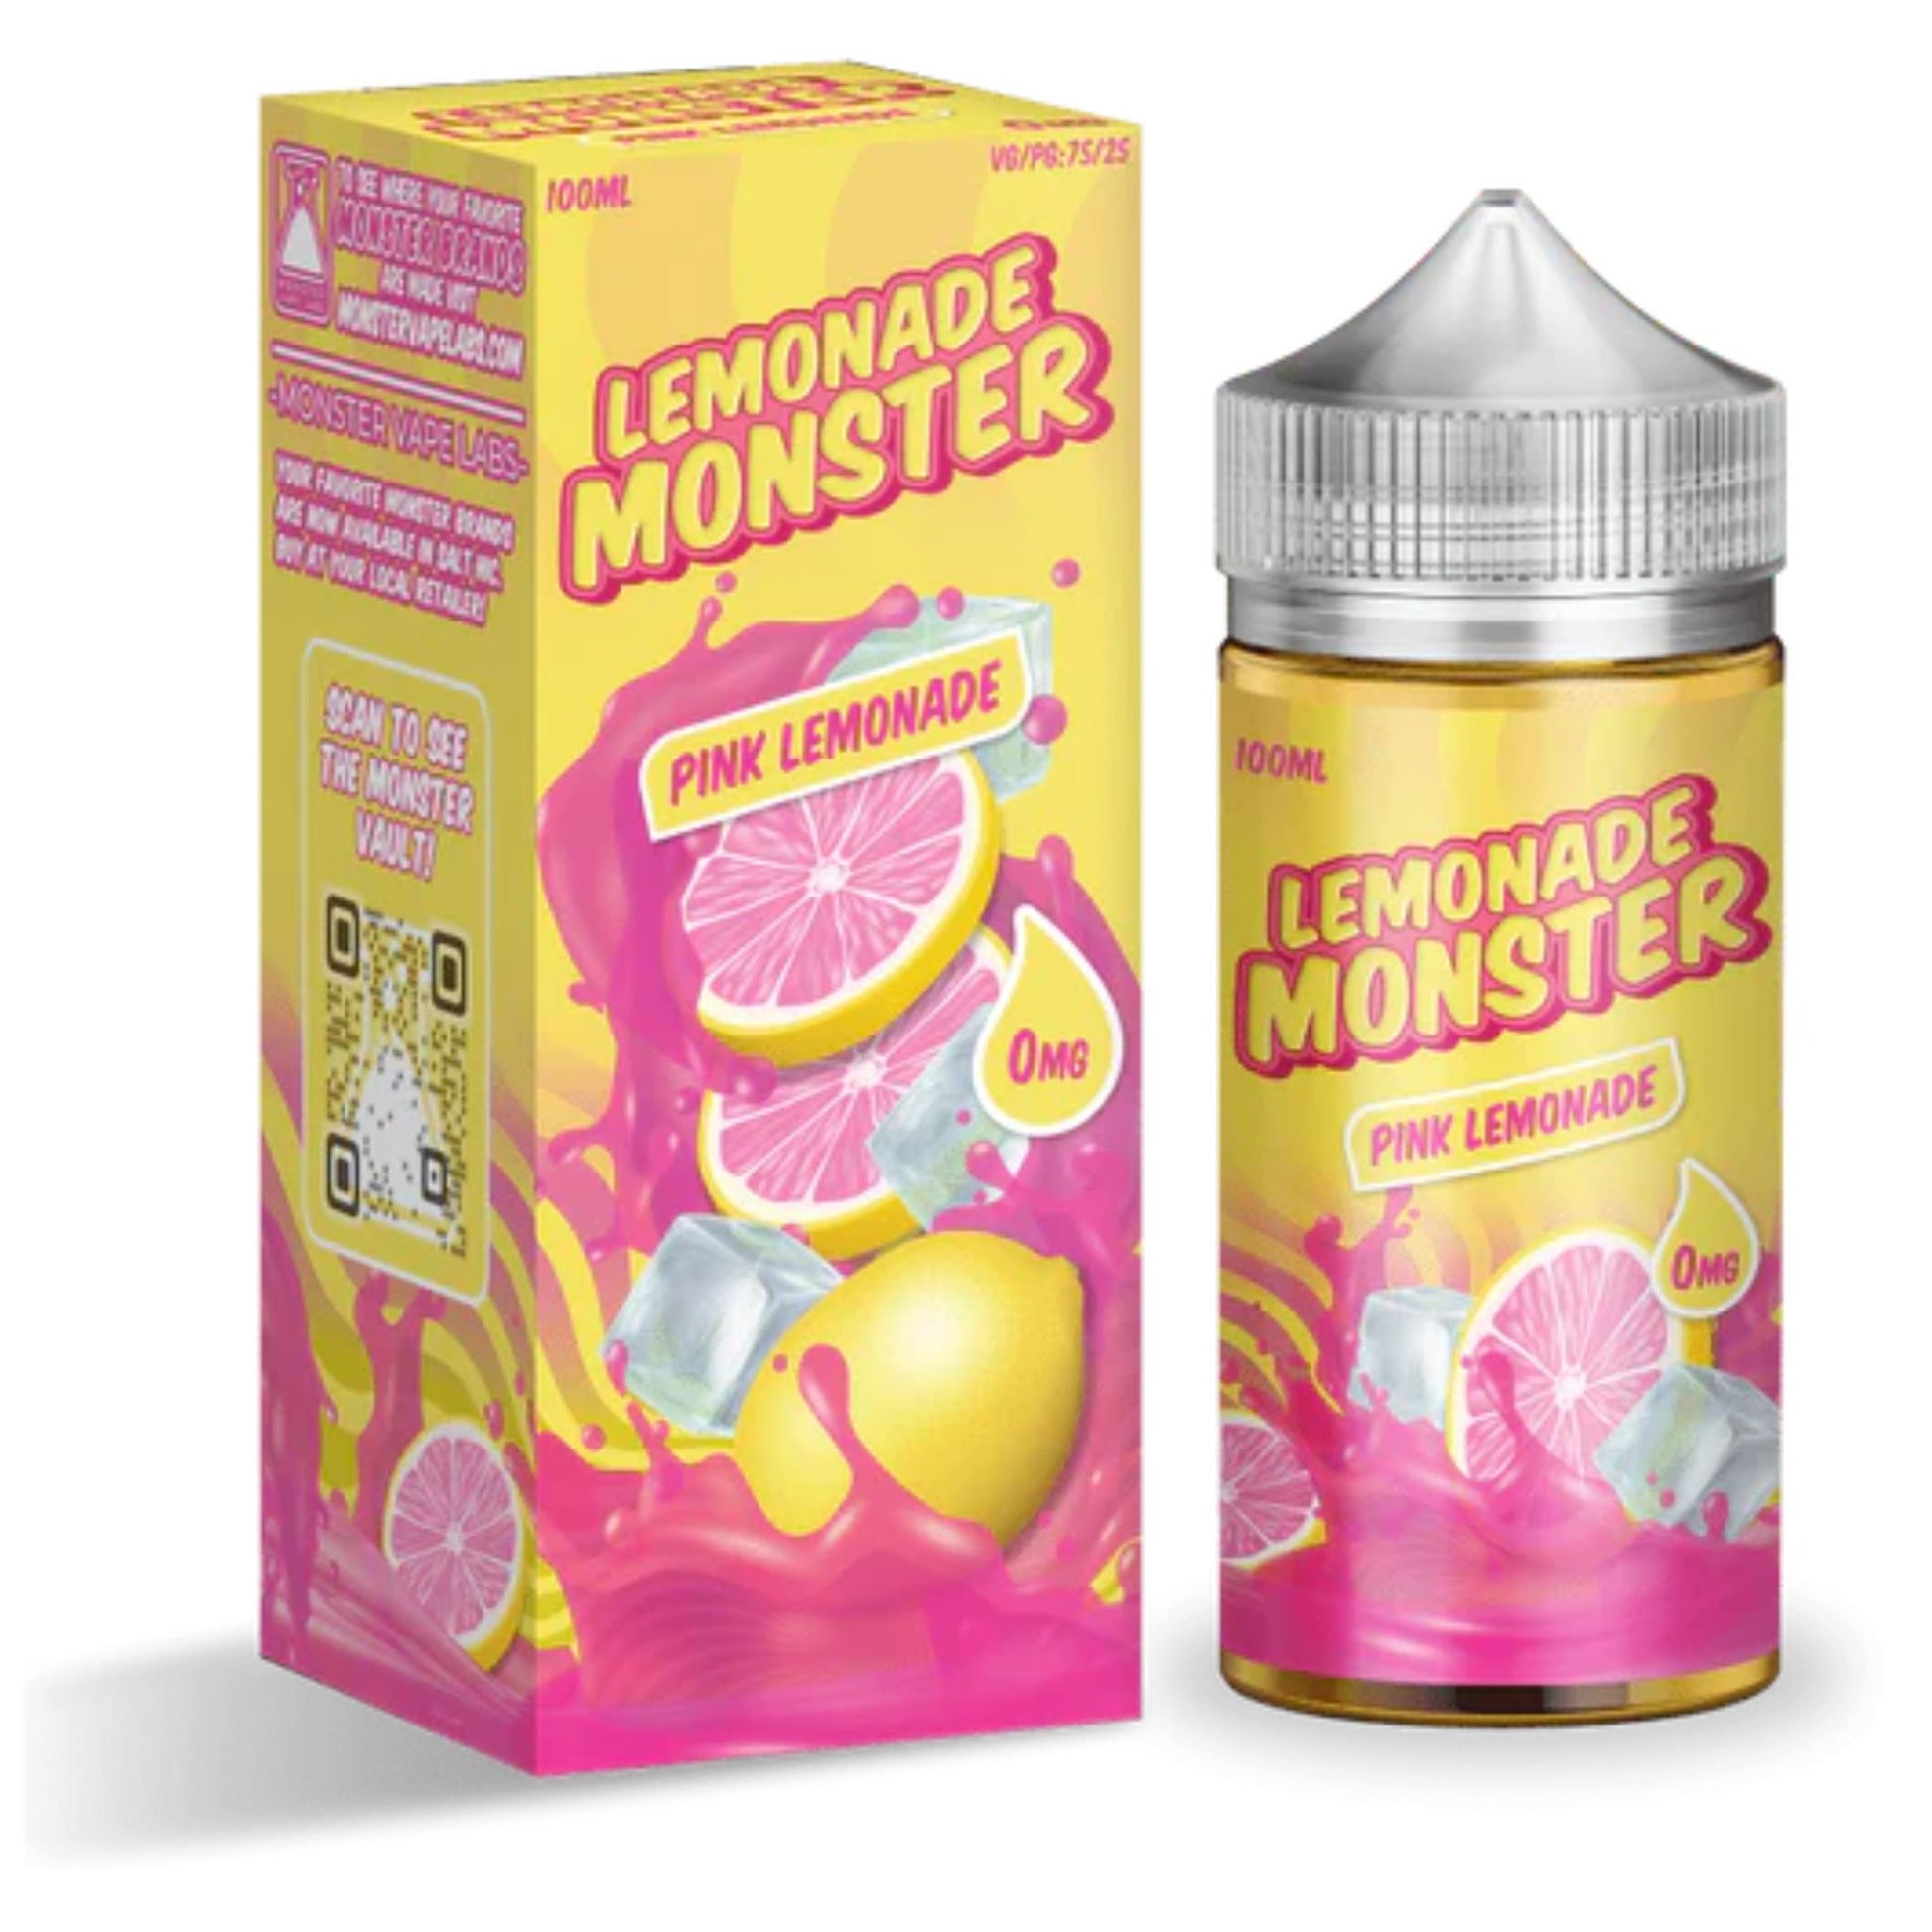 Lemonade Monster | Pink Lemonade | 100ml bottle and box